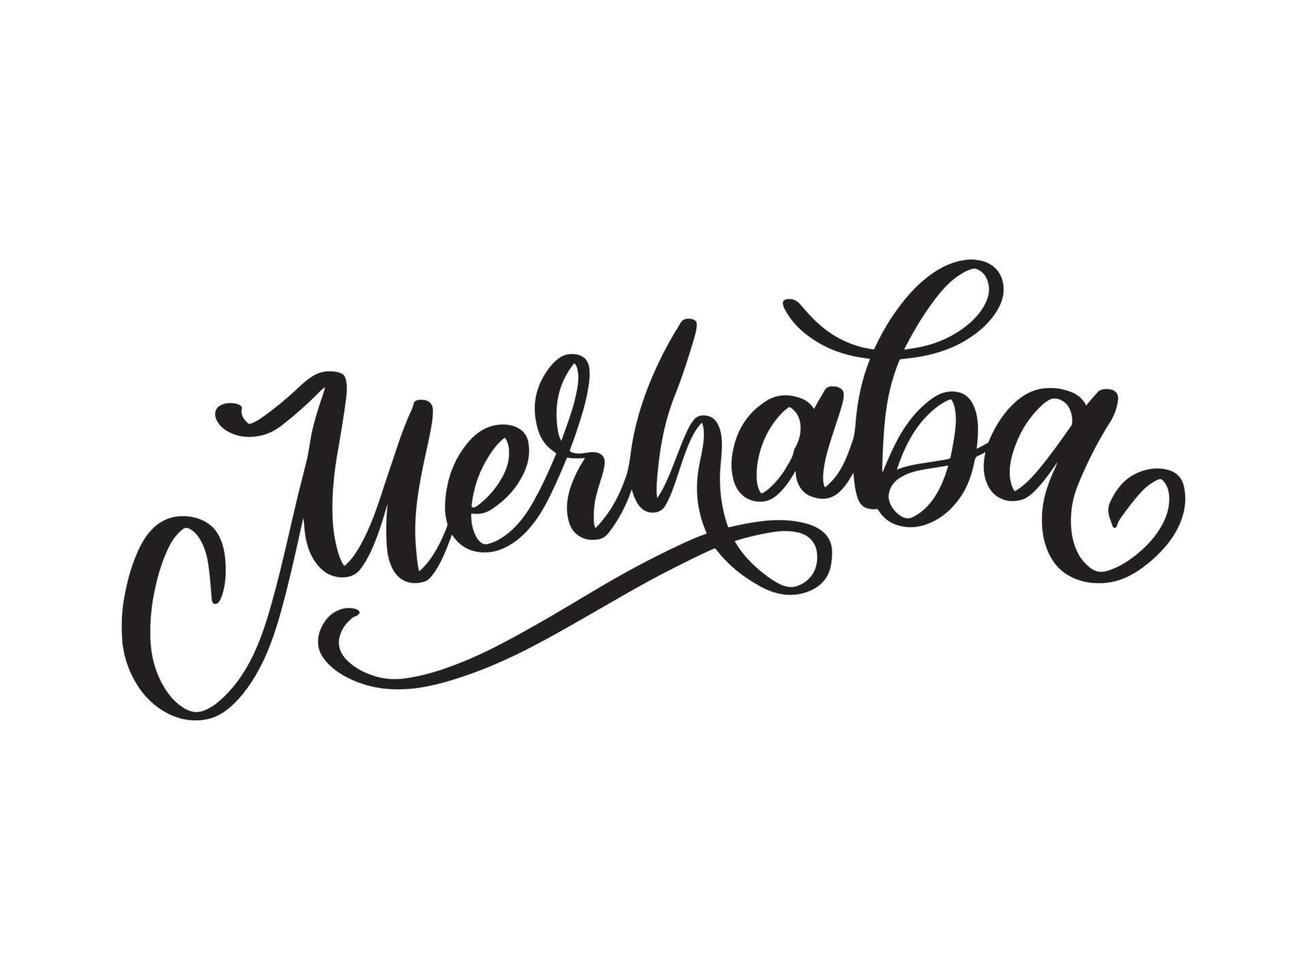 merhaba handritad svart vektor kalligrafi isolerad på vit bakgrund. merhaba - turkiskt ord som betyder hej